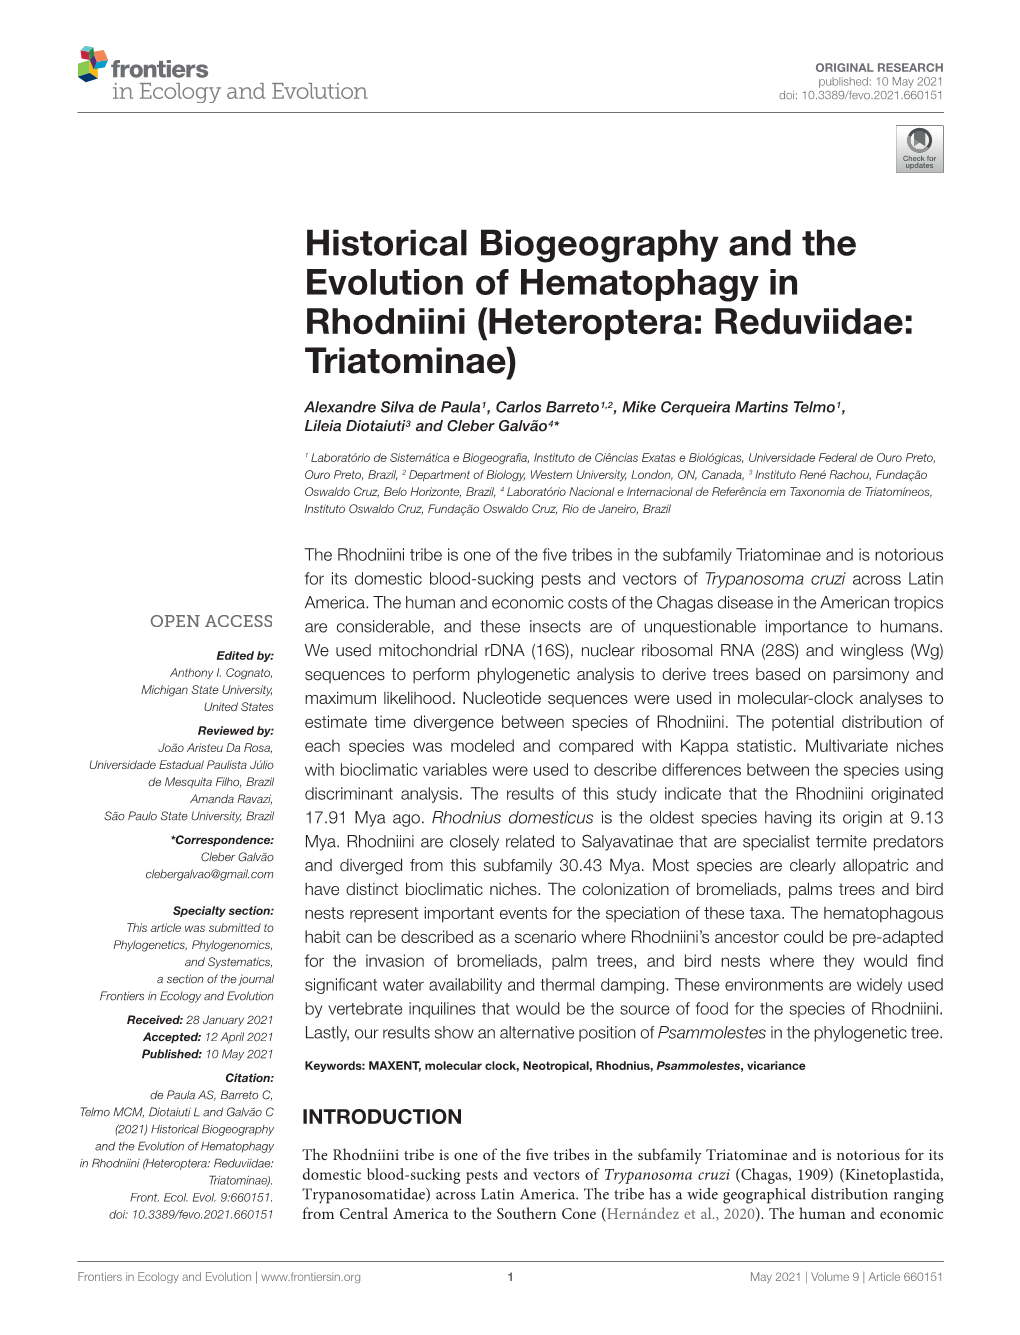 Historical Biogeography and the Evolution of Hematophagy in Rhodniini (Heteroptera: Reduviidae: Triatominae)